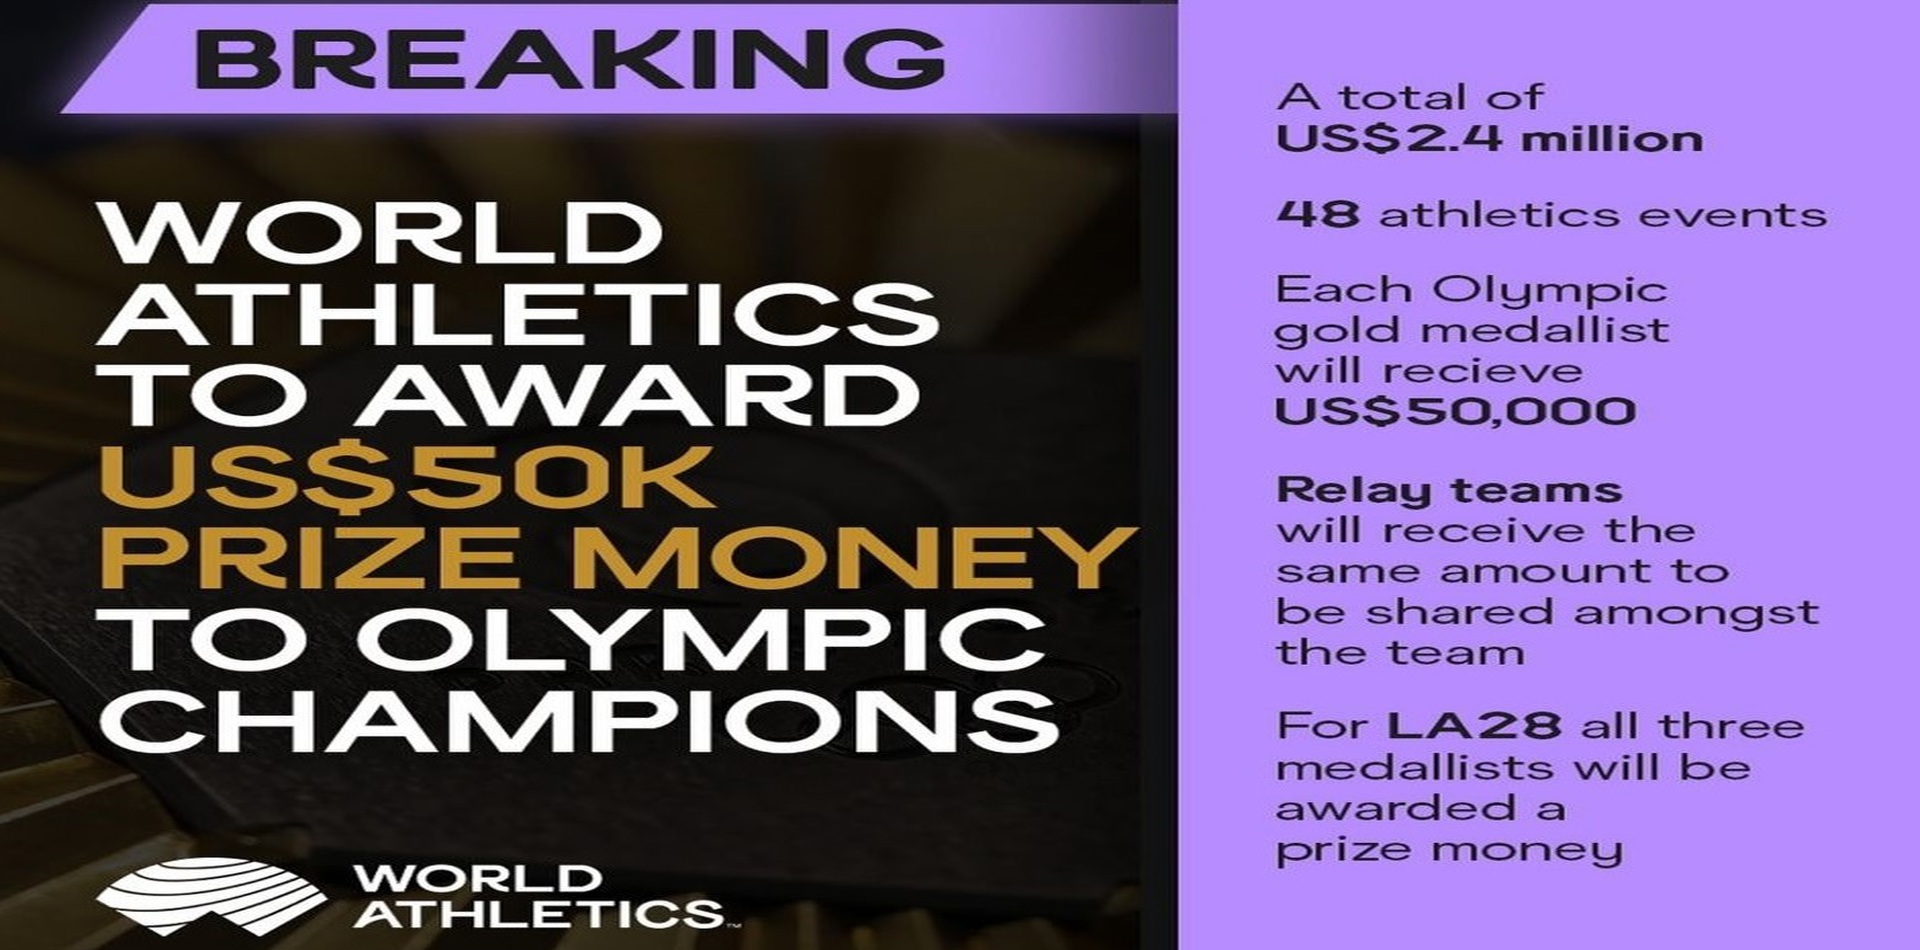 Olimpiyatlarda Altın madalya kazanan sporculara 50’şer bin dolar